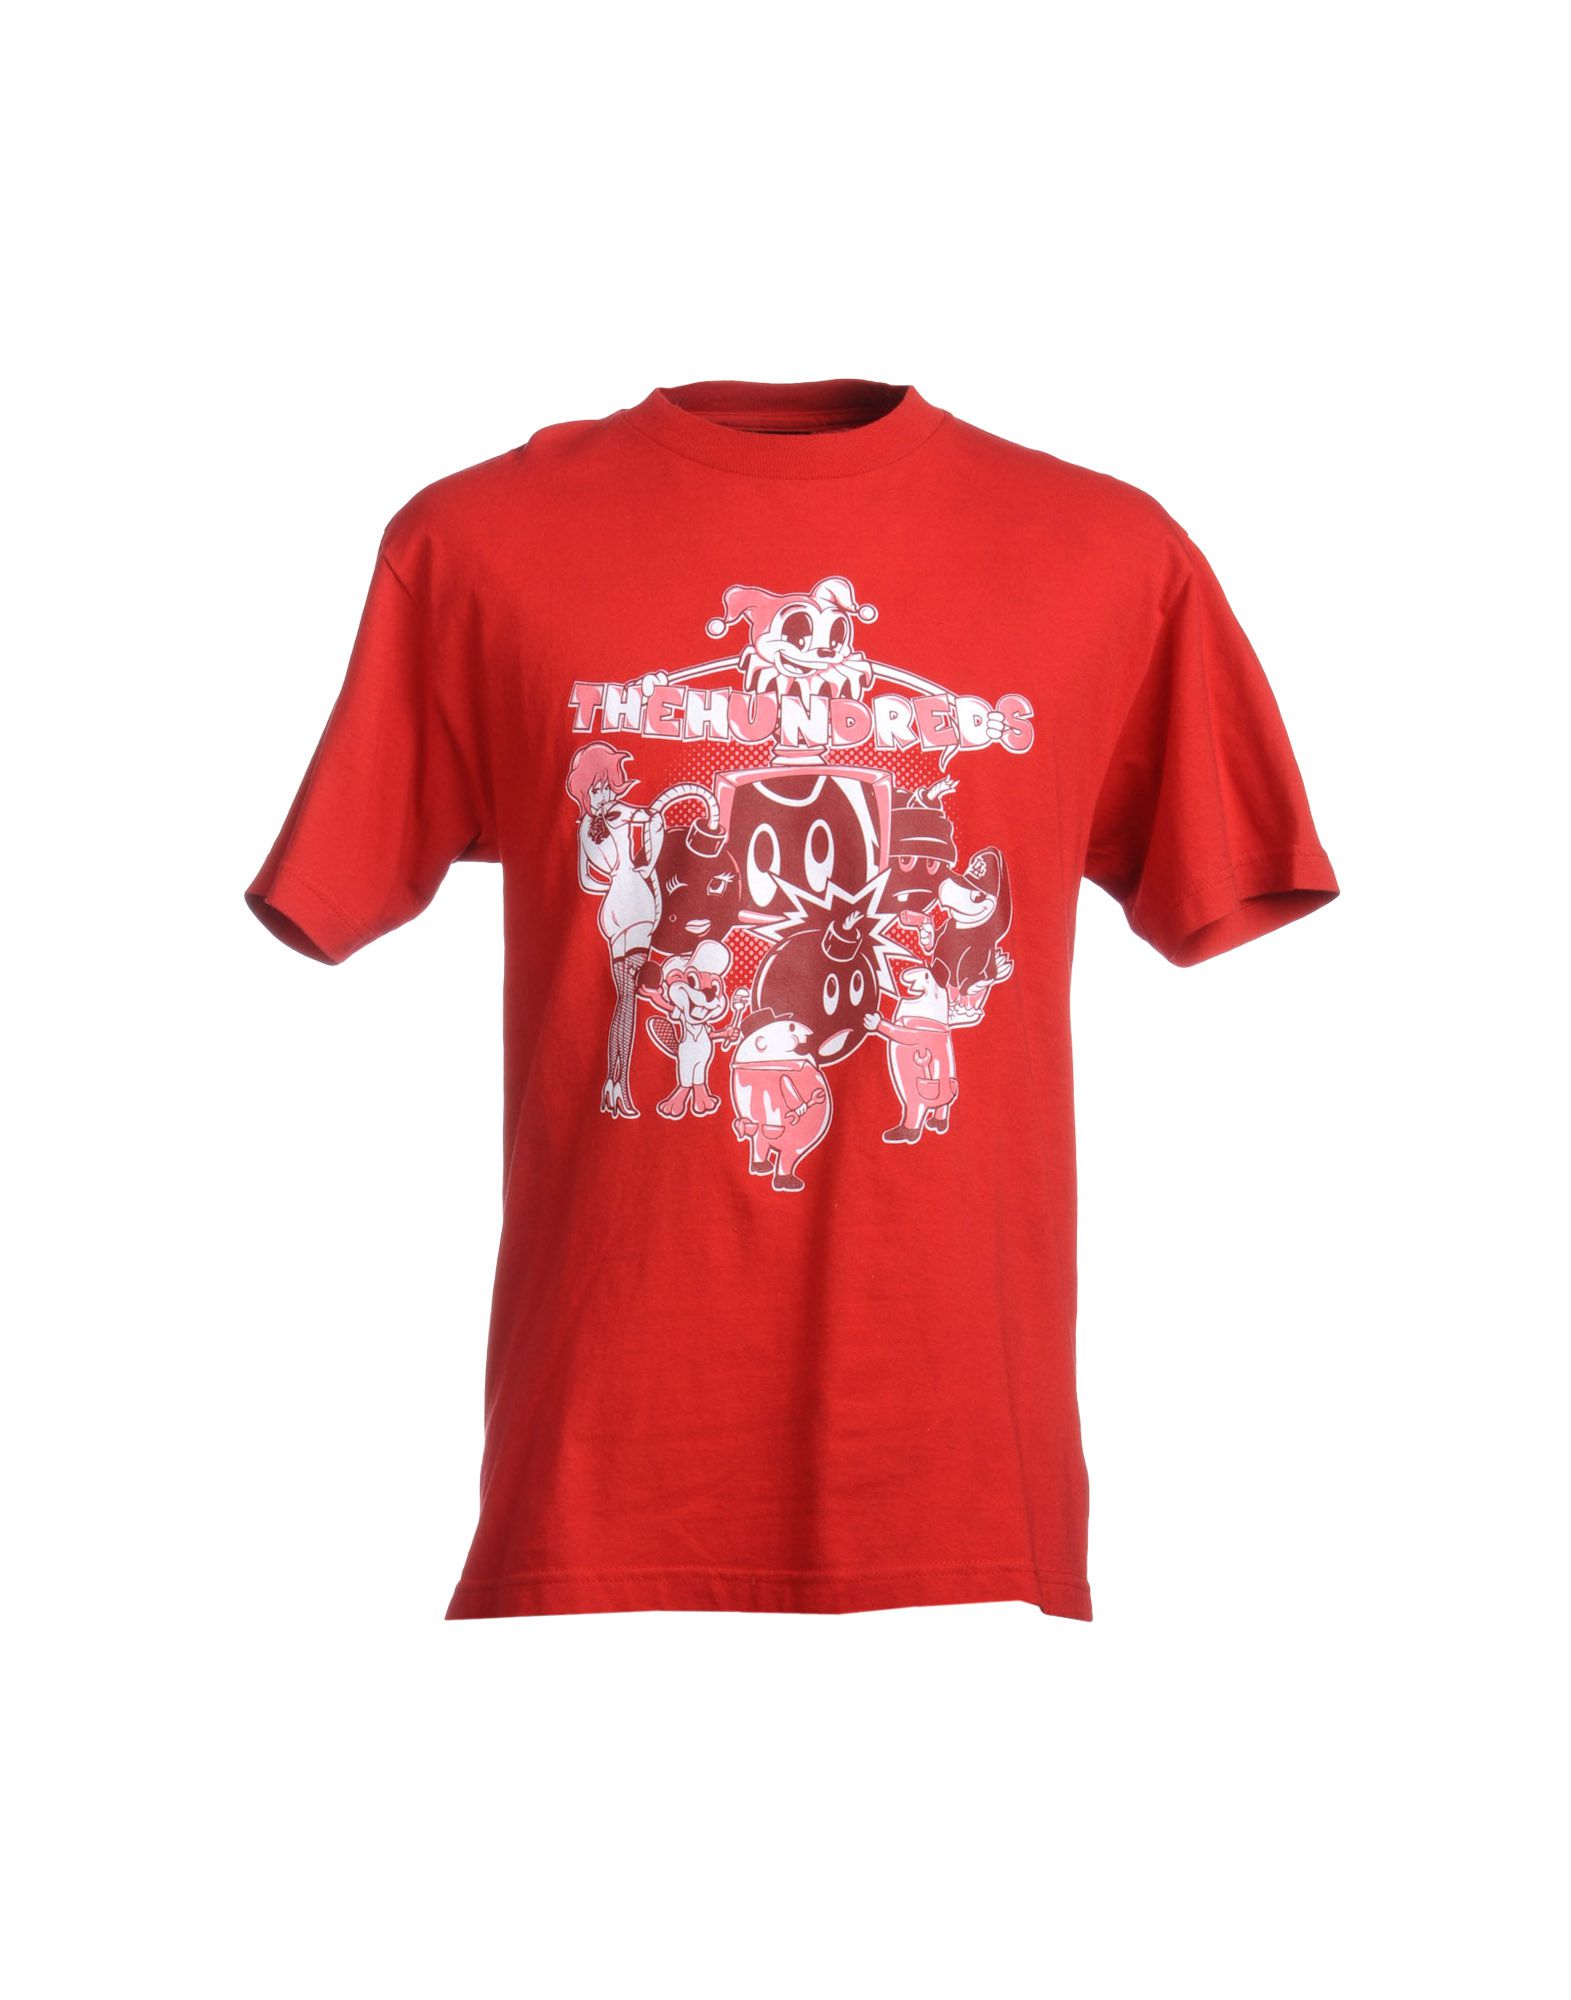 Foto The Hundreds Camisetas De Manga Corta Hombre Rojo